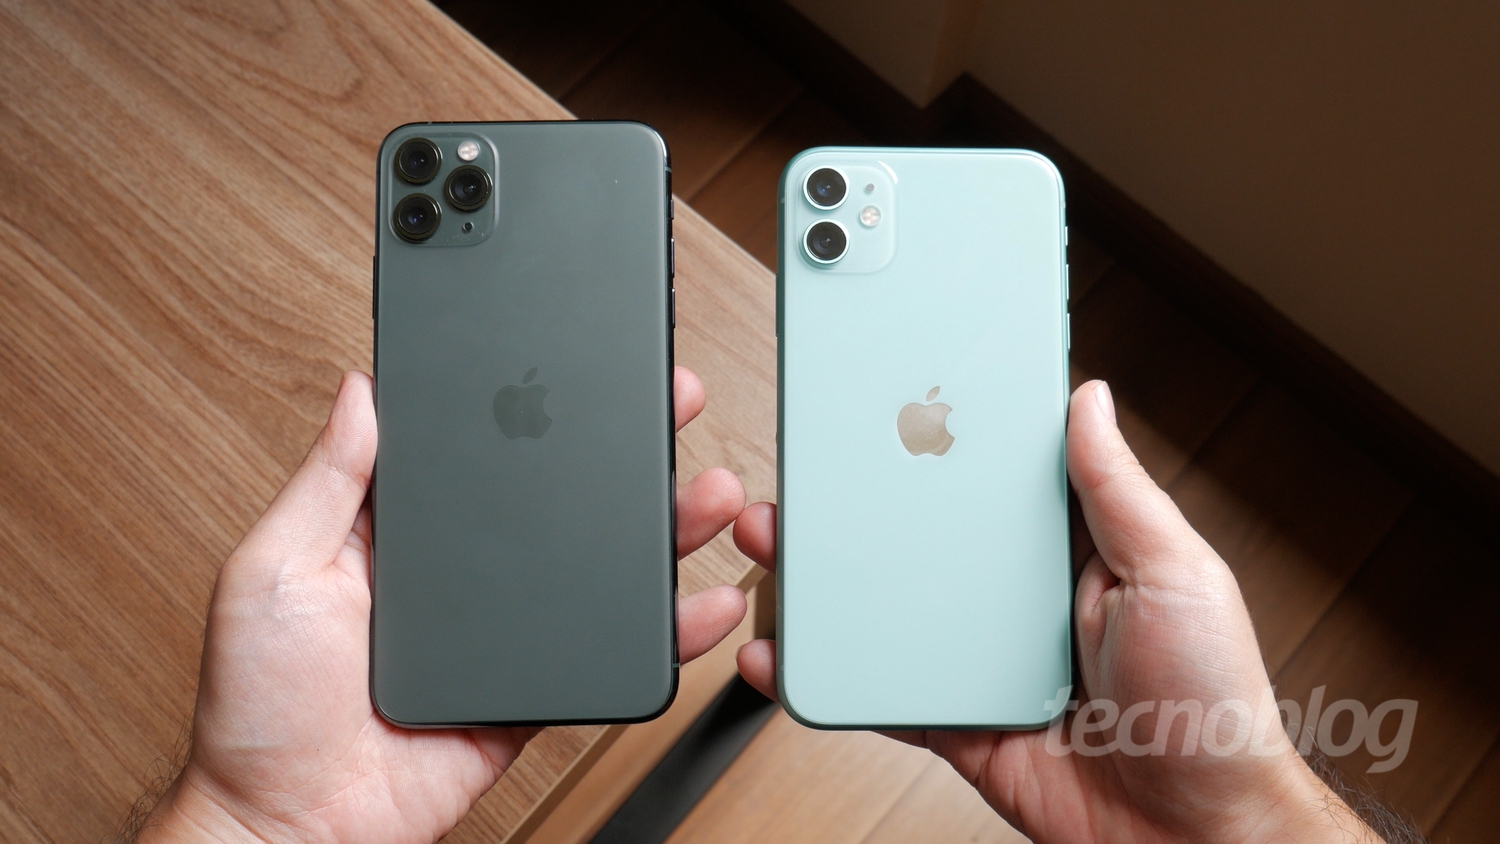 Apple registra nove modelos do iPhone 12 e novo iMac